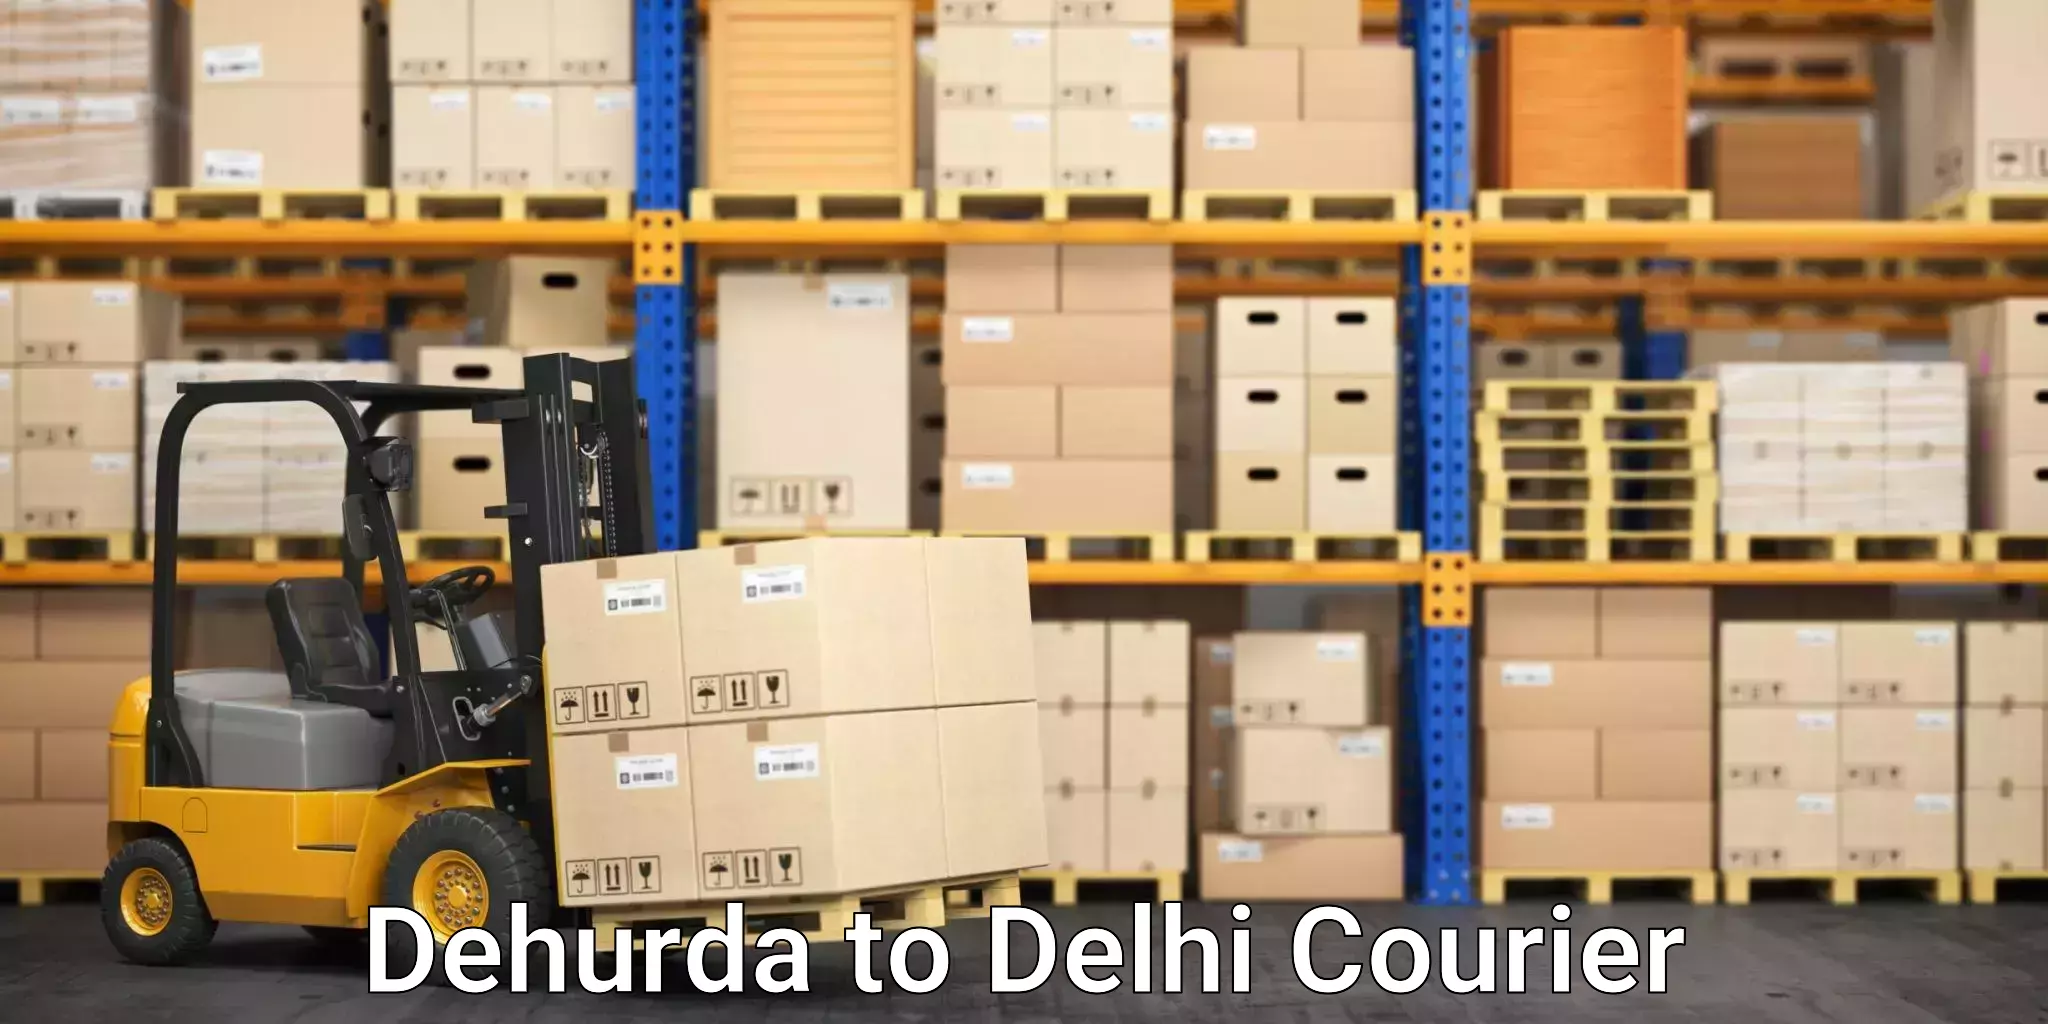 Efficient parcel transport Dehurda to Krishna Nagar